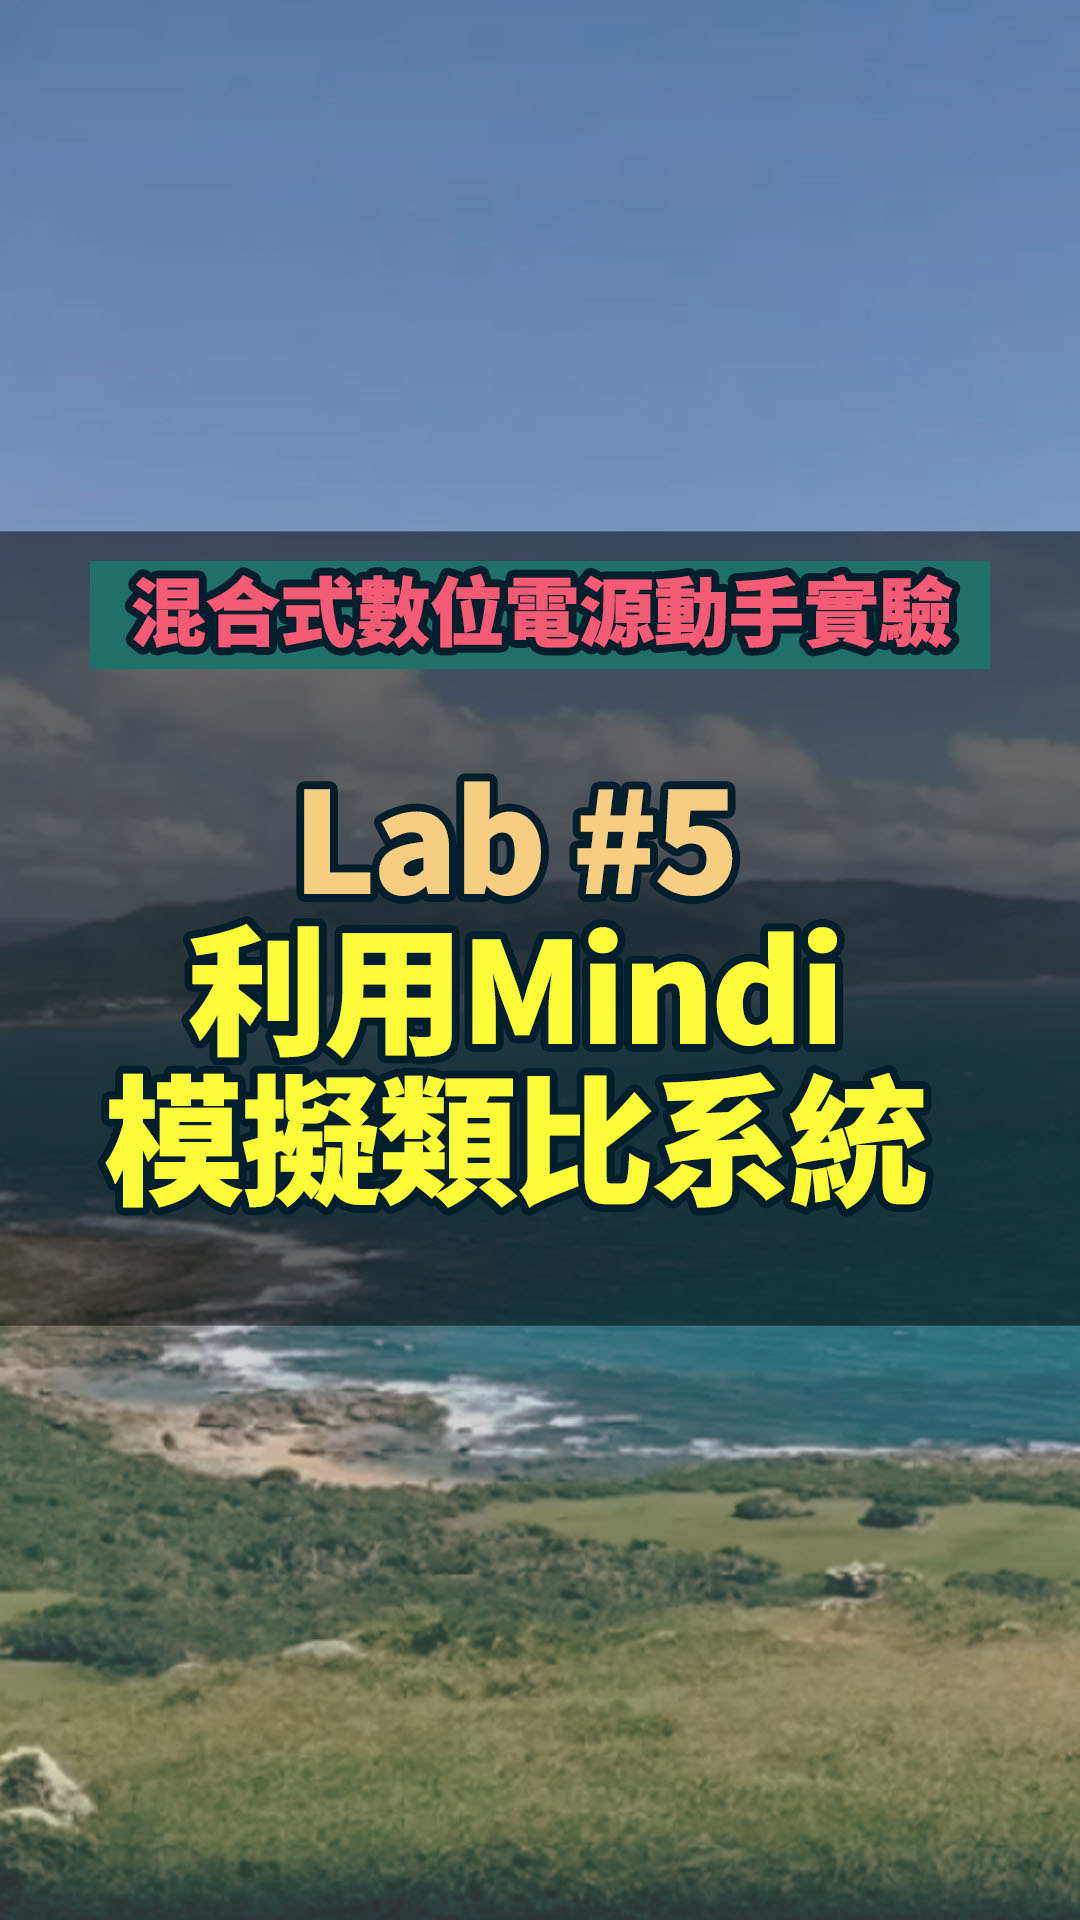 #混合式數位電源動手實驗 -- Lab 5 利用Mindi模擬類比系統